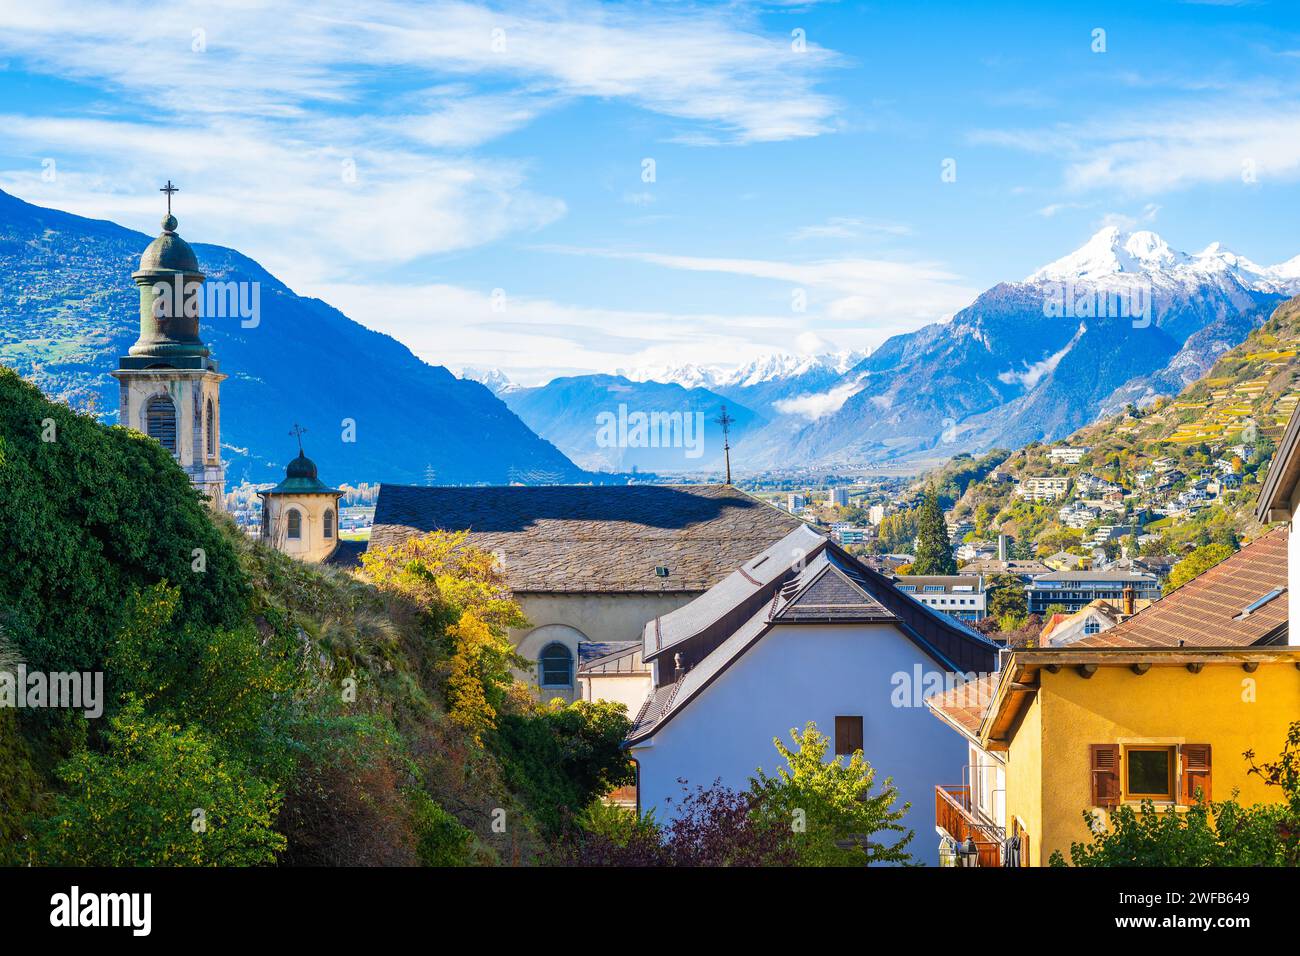 Panoramablick auf die historische Stadt Sion, spektakulär gelegen im schweizer Alpental, Kanton Wallis, Schweiz Stockfoto